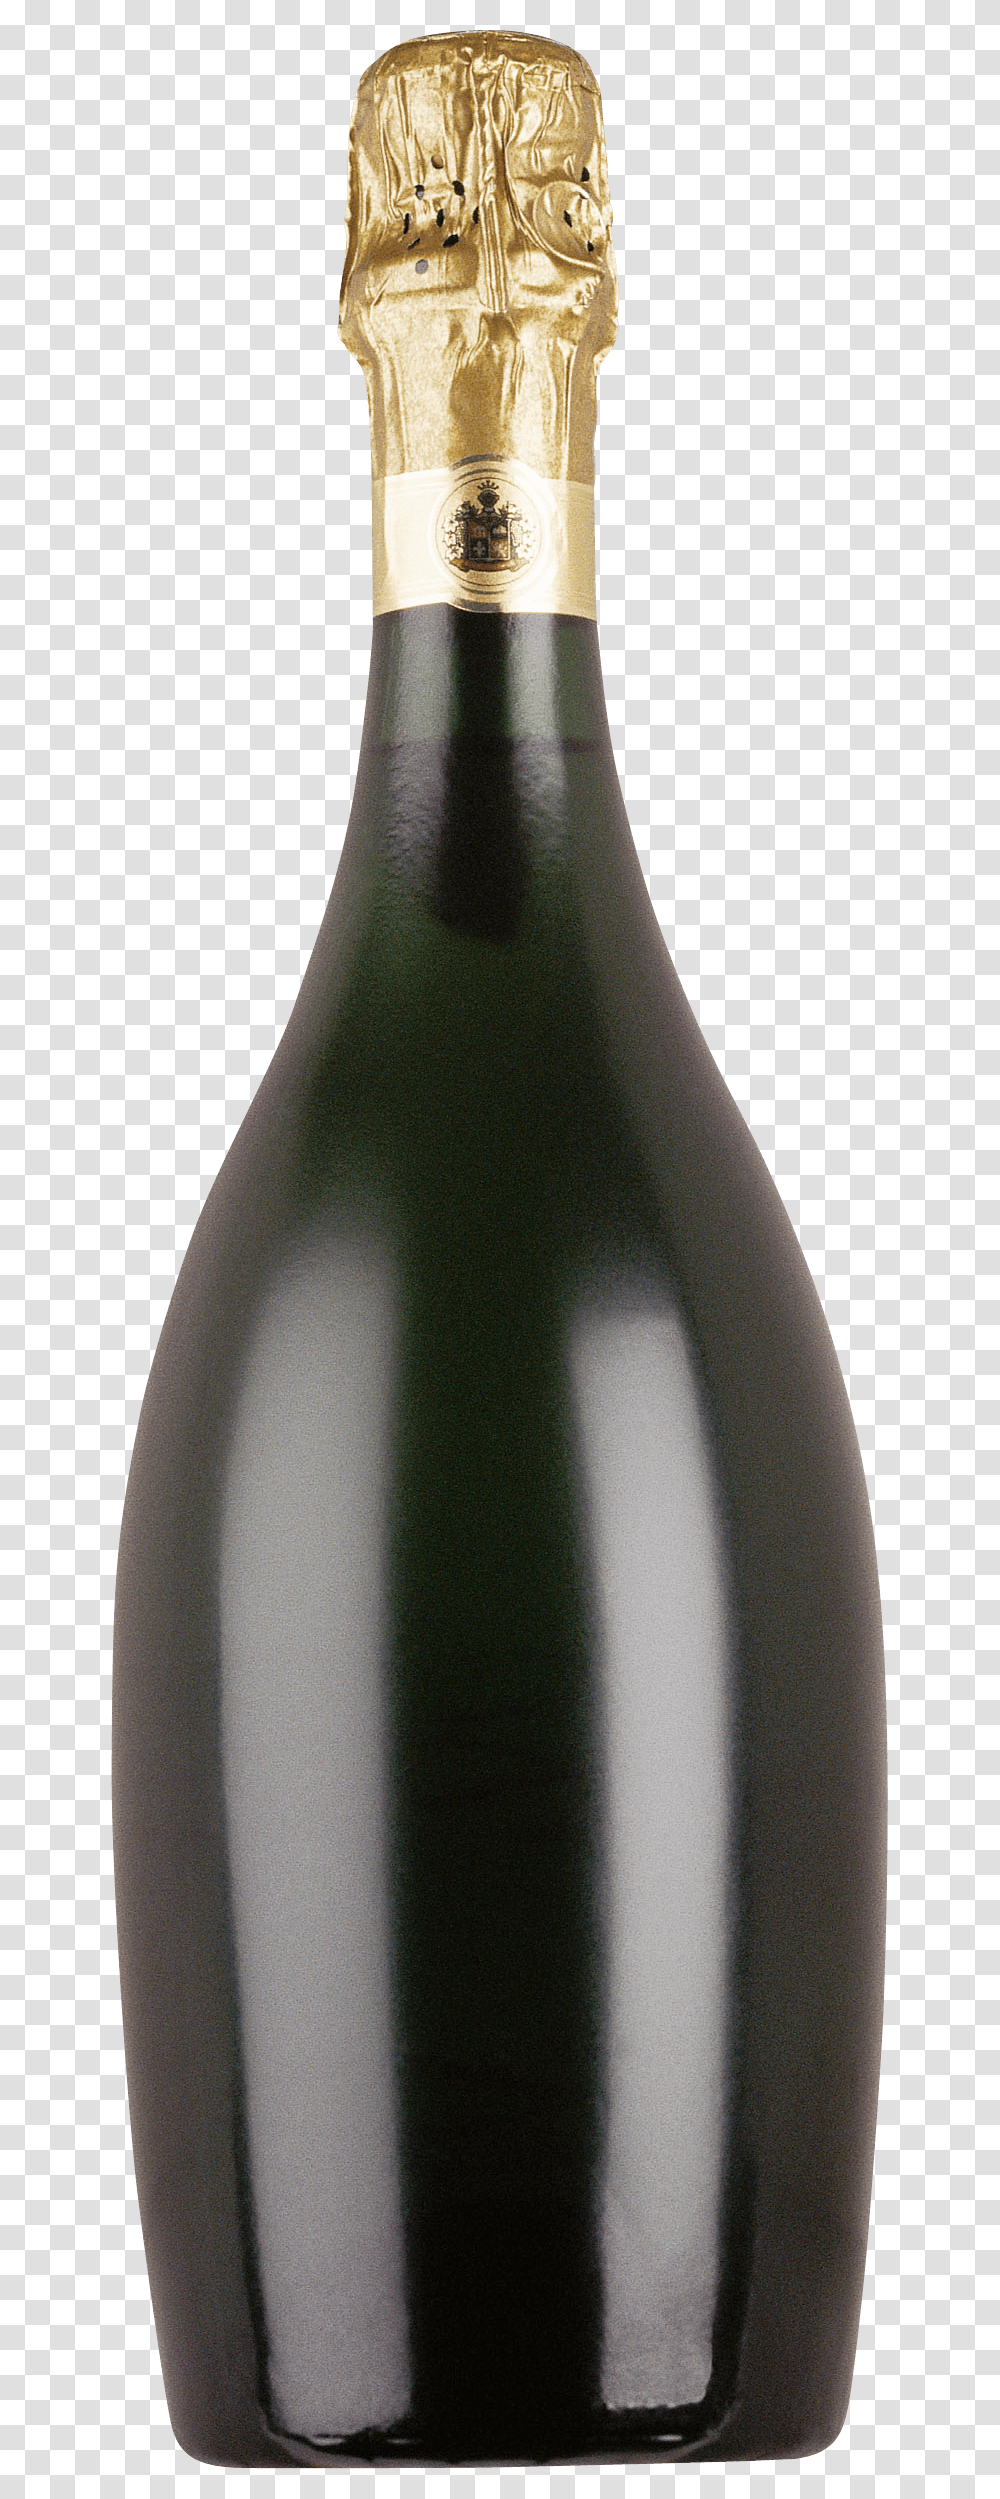 Blank Champagne Bottle, Alcohol, Beverage, Drink, Wine Transparent Png